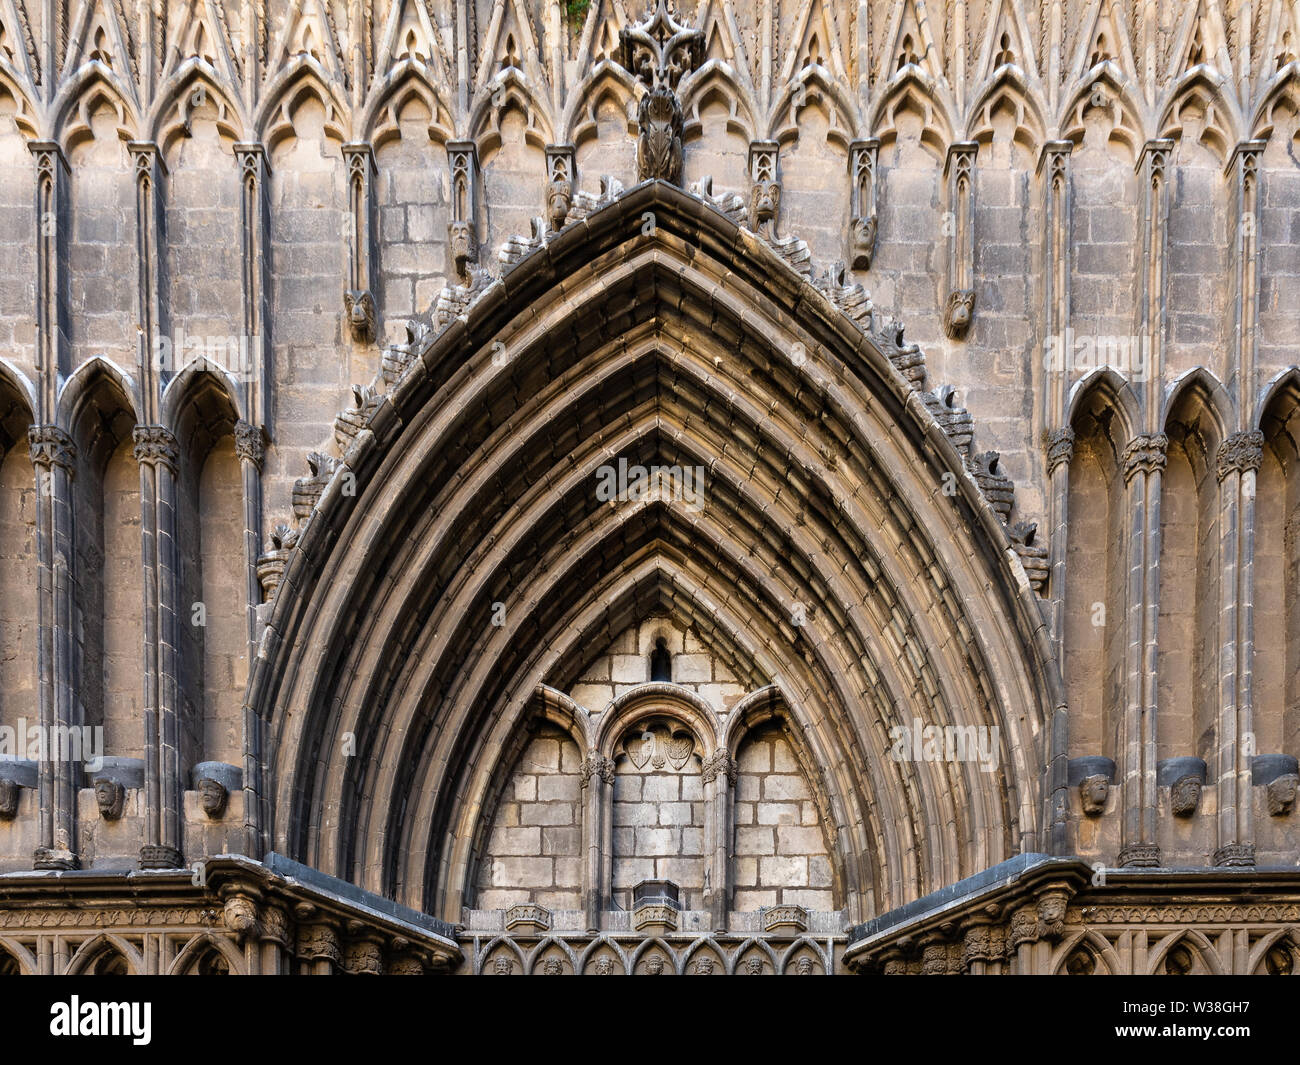 Eclesia de Santa Maria del Pi. Portail décoré en style gothique catalan typique. Barcelone, Espagne. Banque D'Images